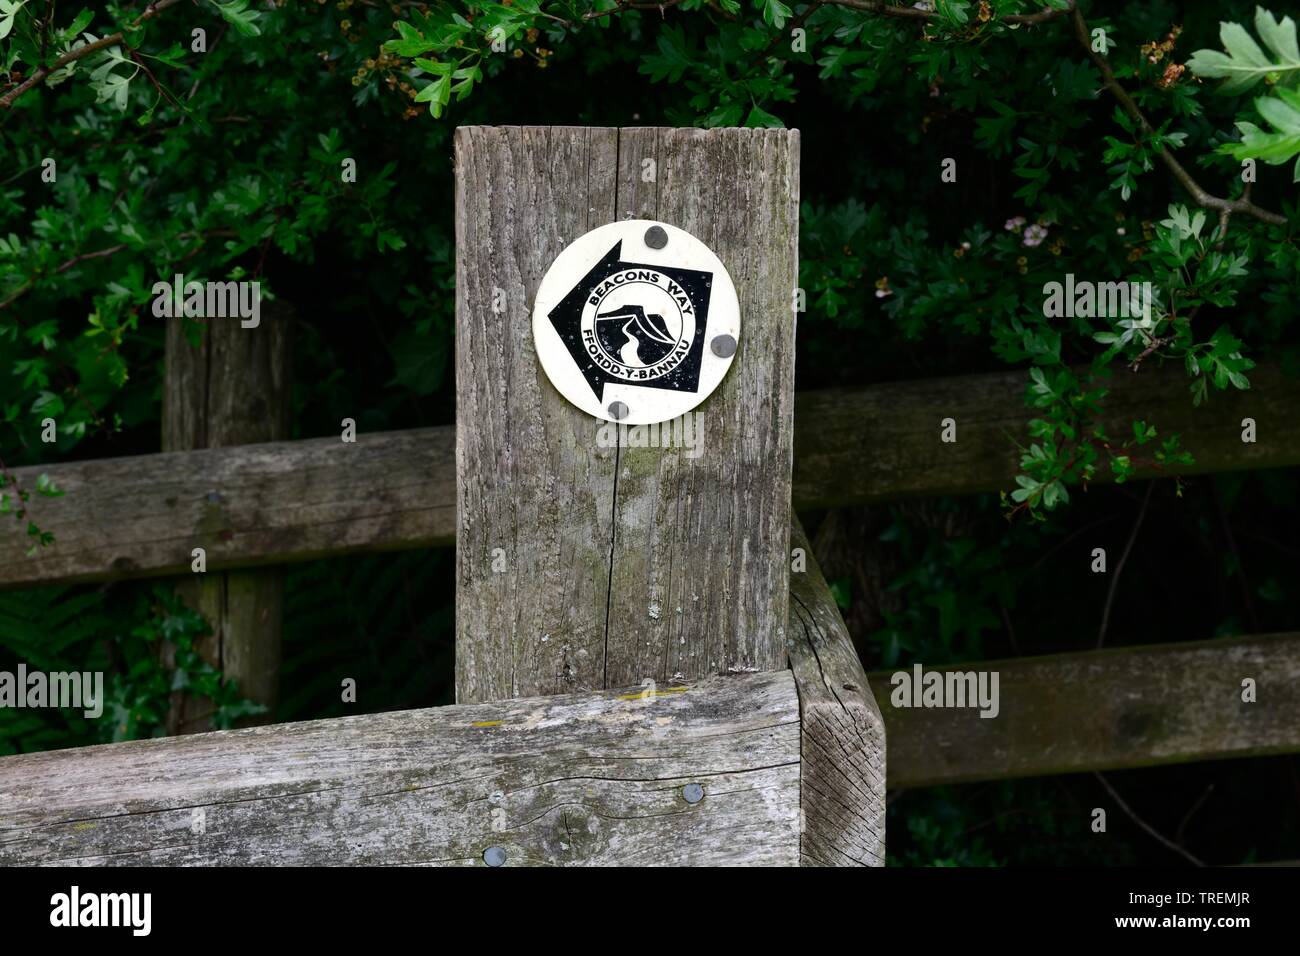 Beacons Weise zweisprachig Englisch Walisisch Fußweg Zeichen auf eine alte hölzerne Tor Ffordd y Bannau Wales Cymru GROSSBRITANNIEN Stockfoto